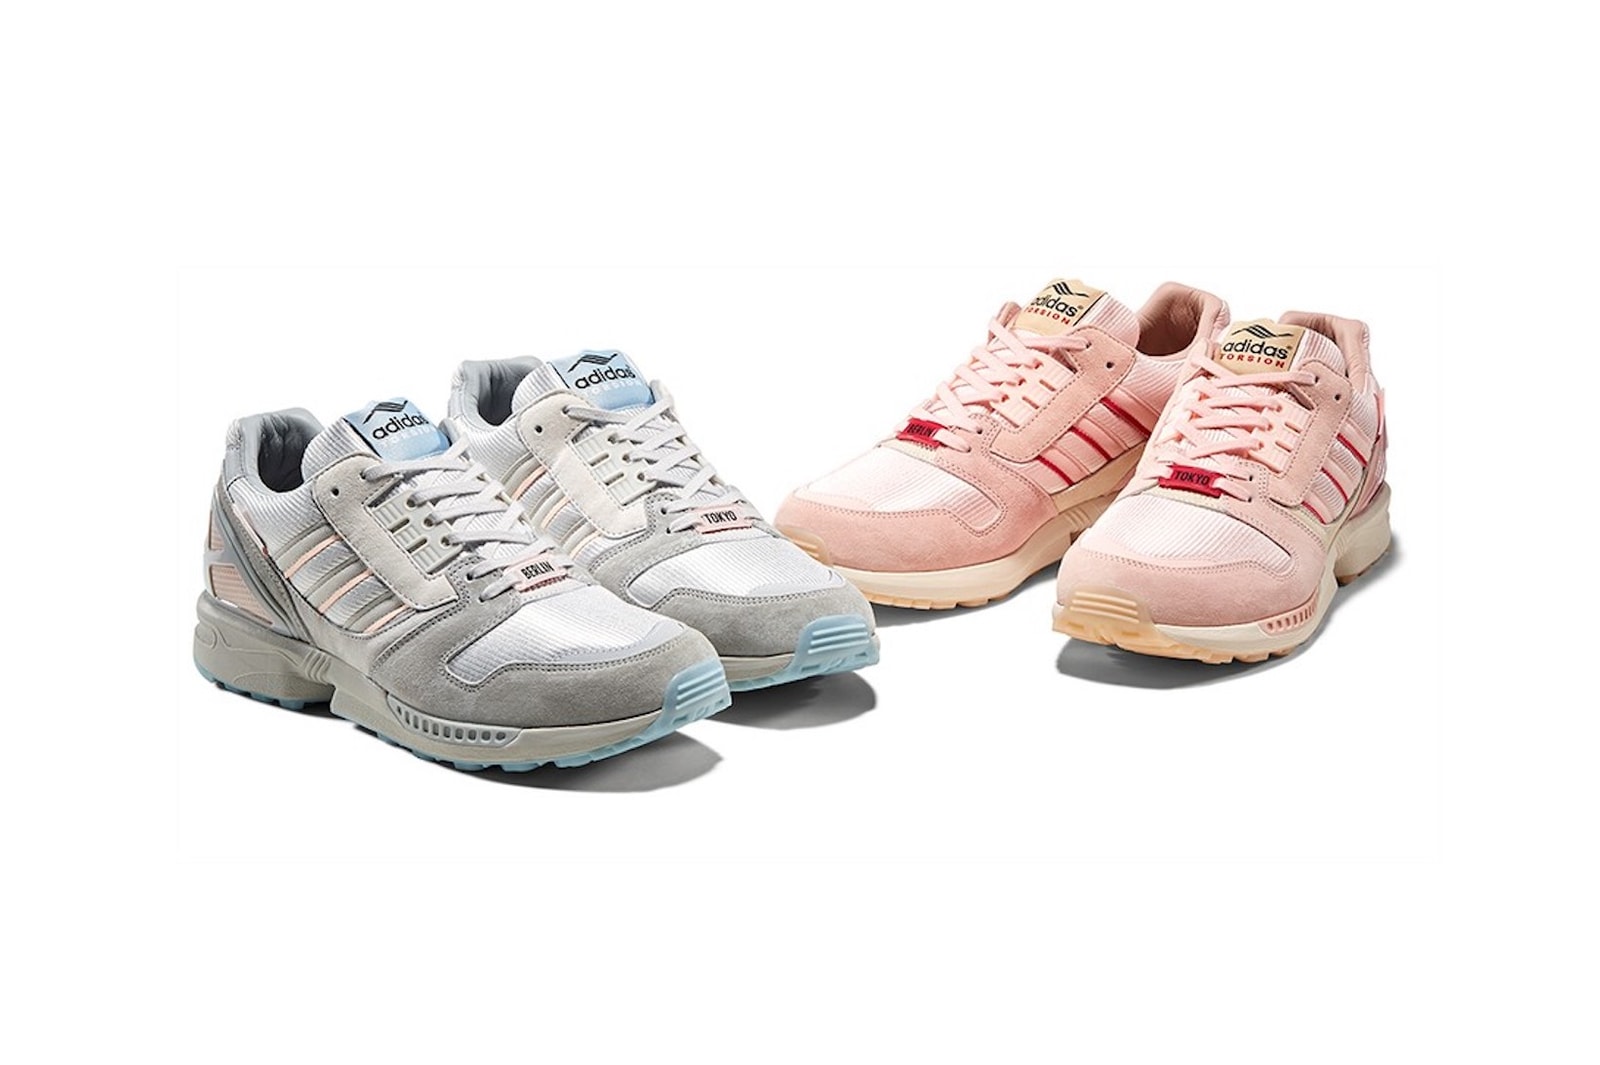 adidas zx 8000 sneakers kirschblutenallee pack pink blue grey release hanami yozakura festival sneakerhead footwear shoes